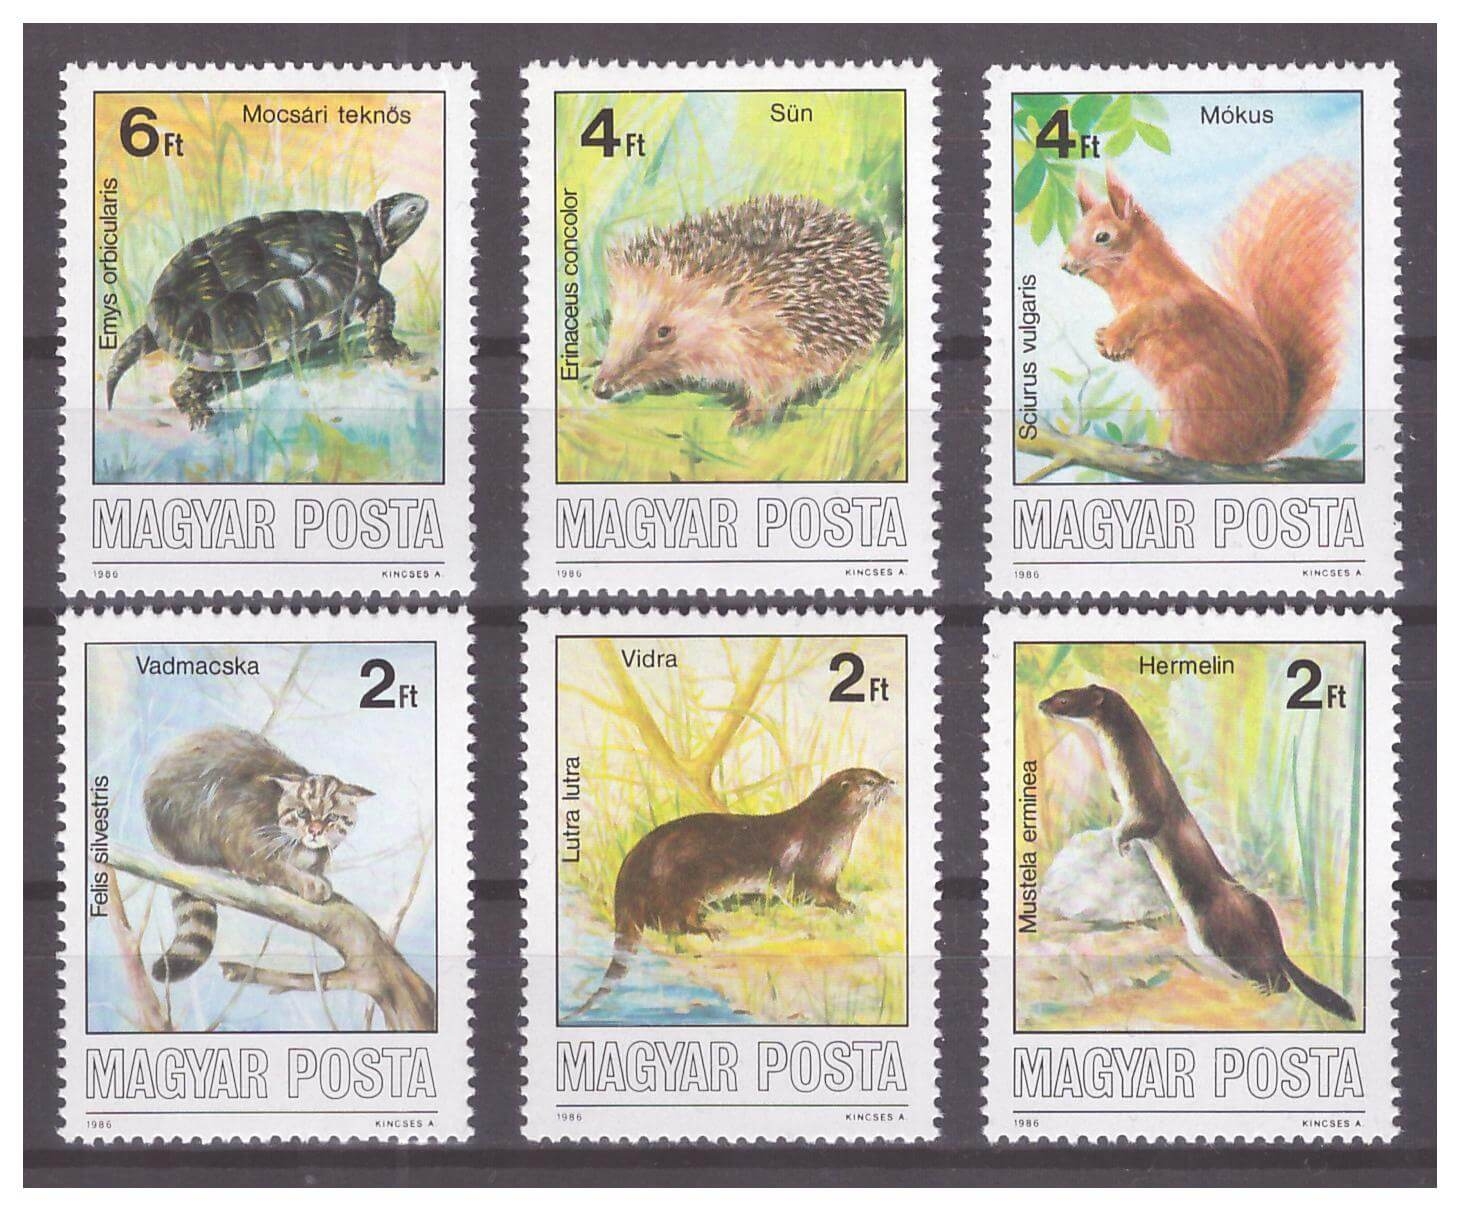 Венгрия 1986 г. № 3860-3865. Фауна. Охраняемые животные. Серия